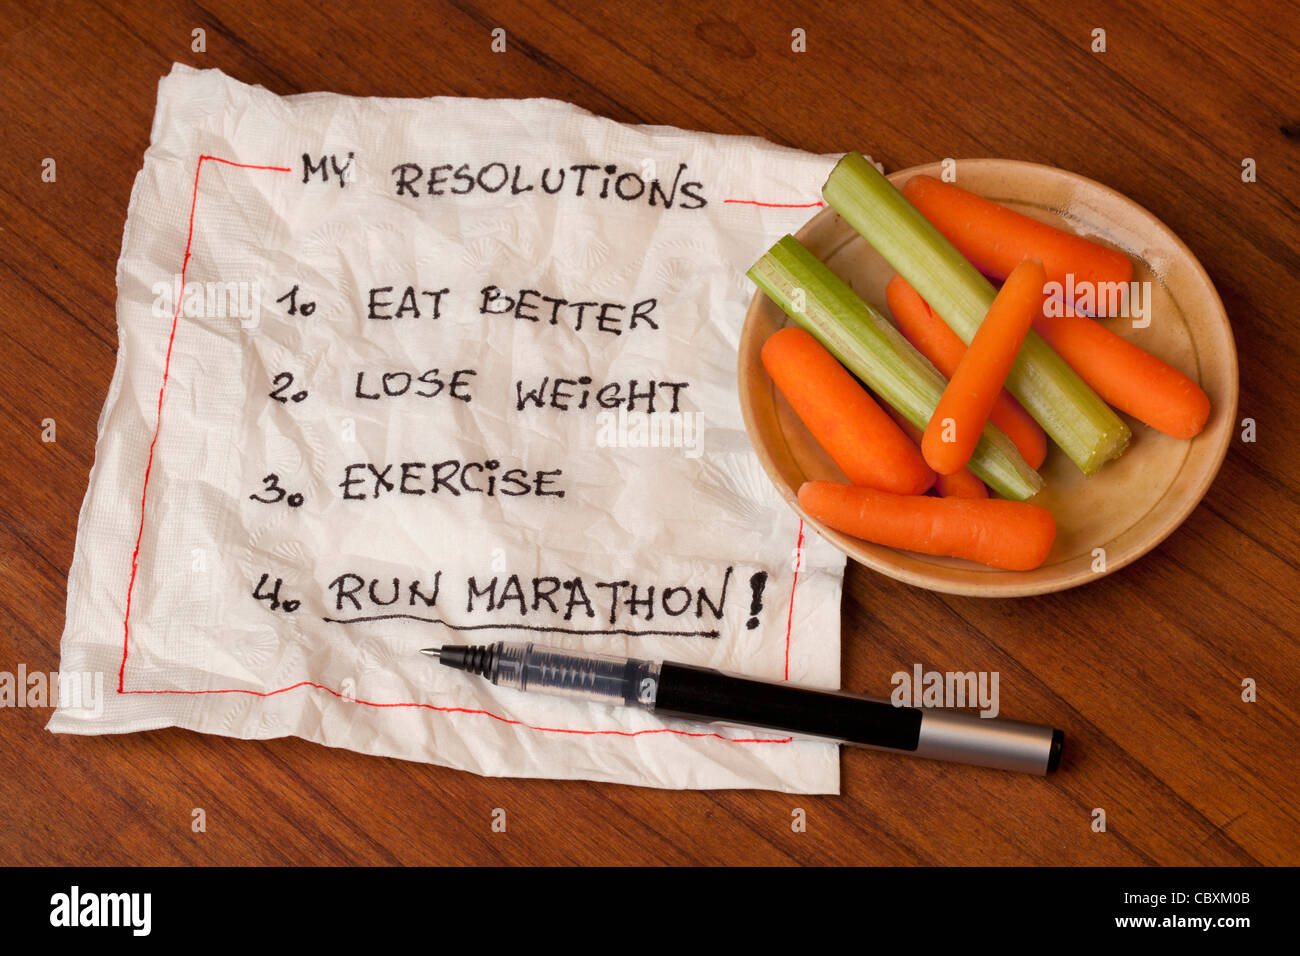 En bonne santé et ambitieux résolutions pour la nouvelle année (régime alimentaire, perdre du poids, l'exercice, exécutez marathon) - Serviette main Banque D'Images